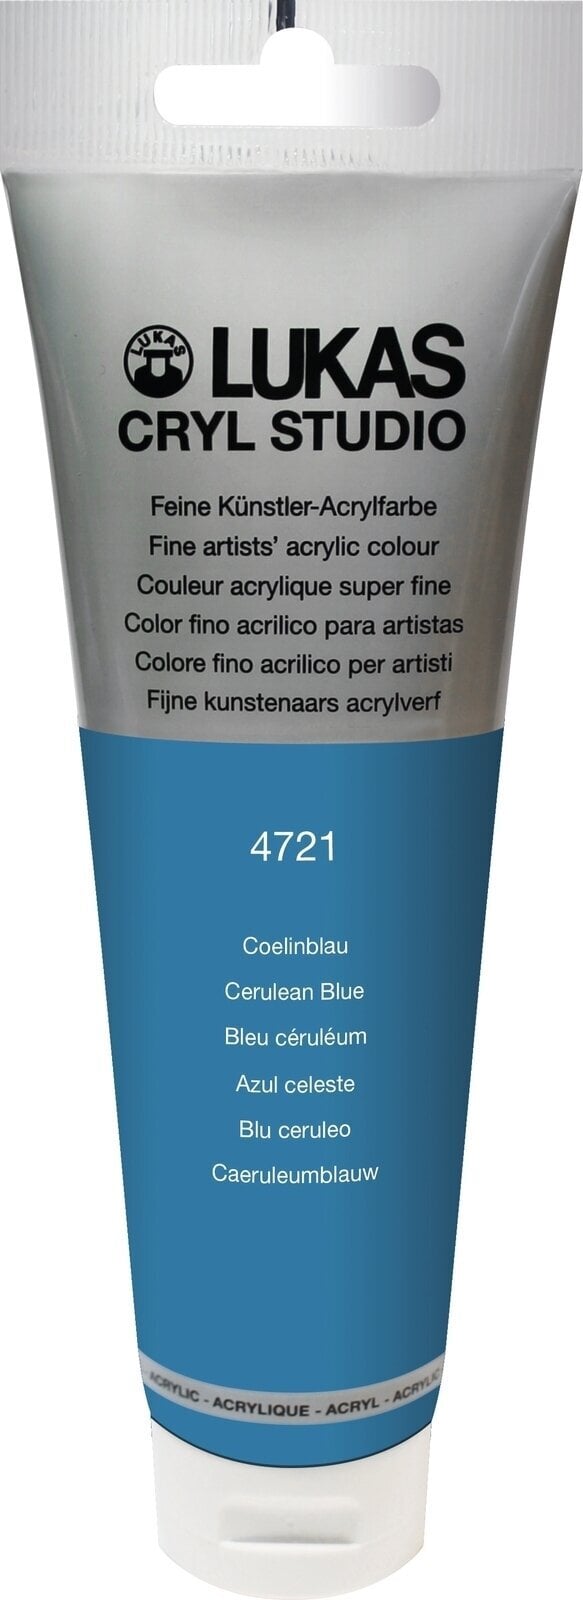 Acrylfarbe Lukas Cryl Studio Acrylic Paint Plastic Tube Acrylfarbe Cerulean Blue 125 ml 1 Stck